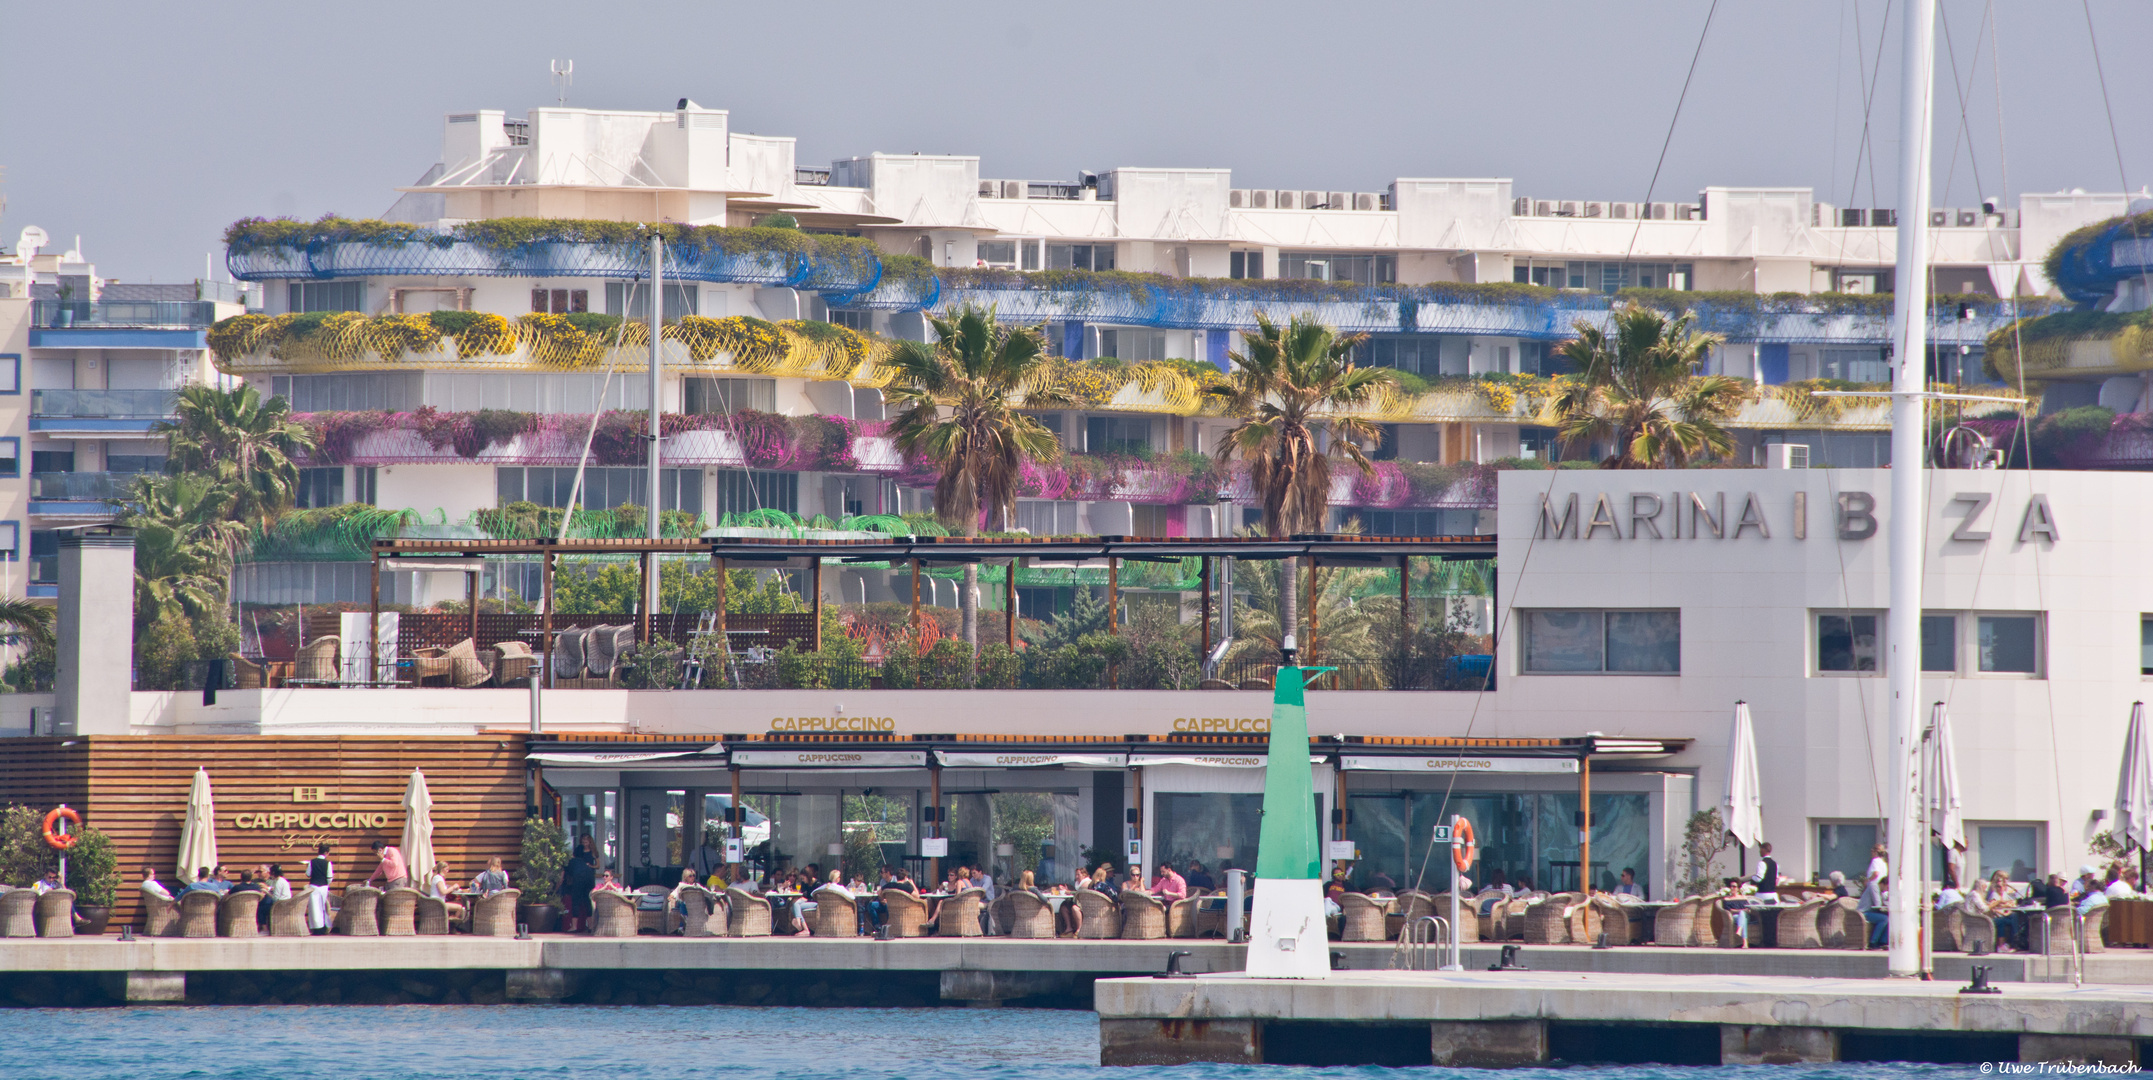 Marina Ibiza